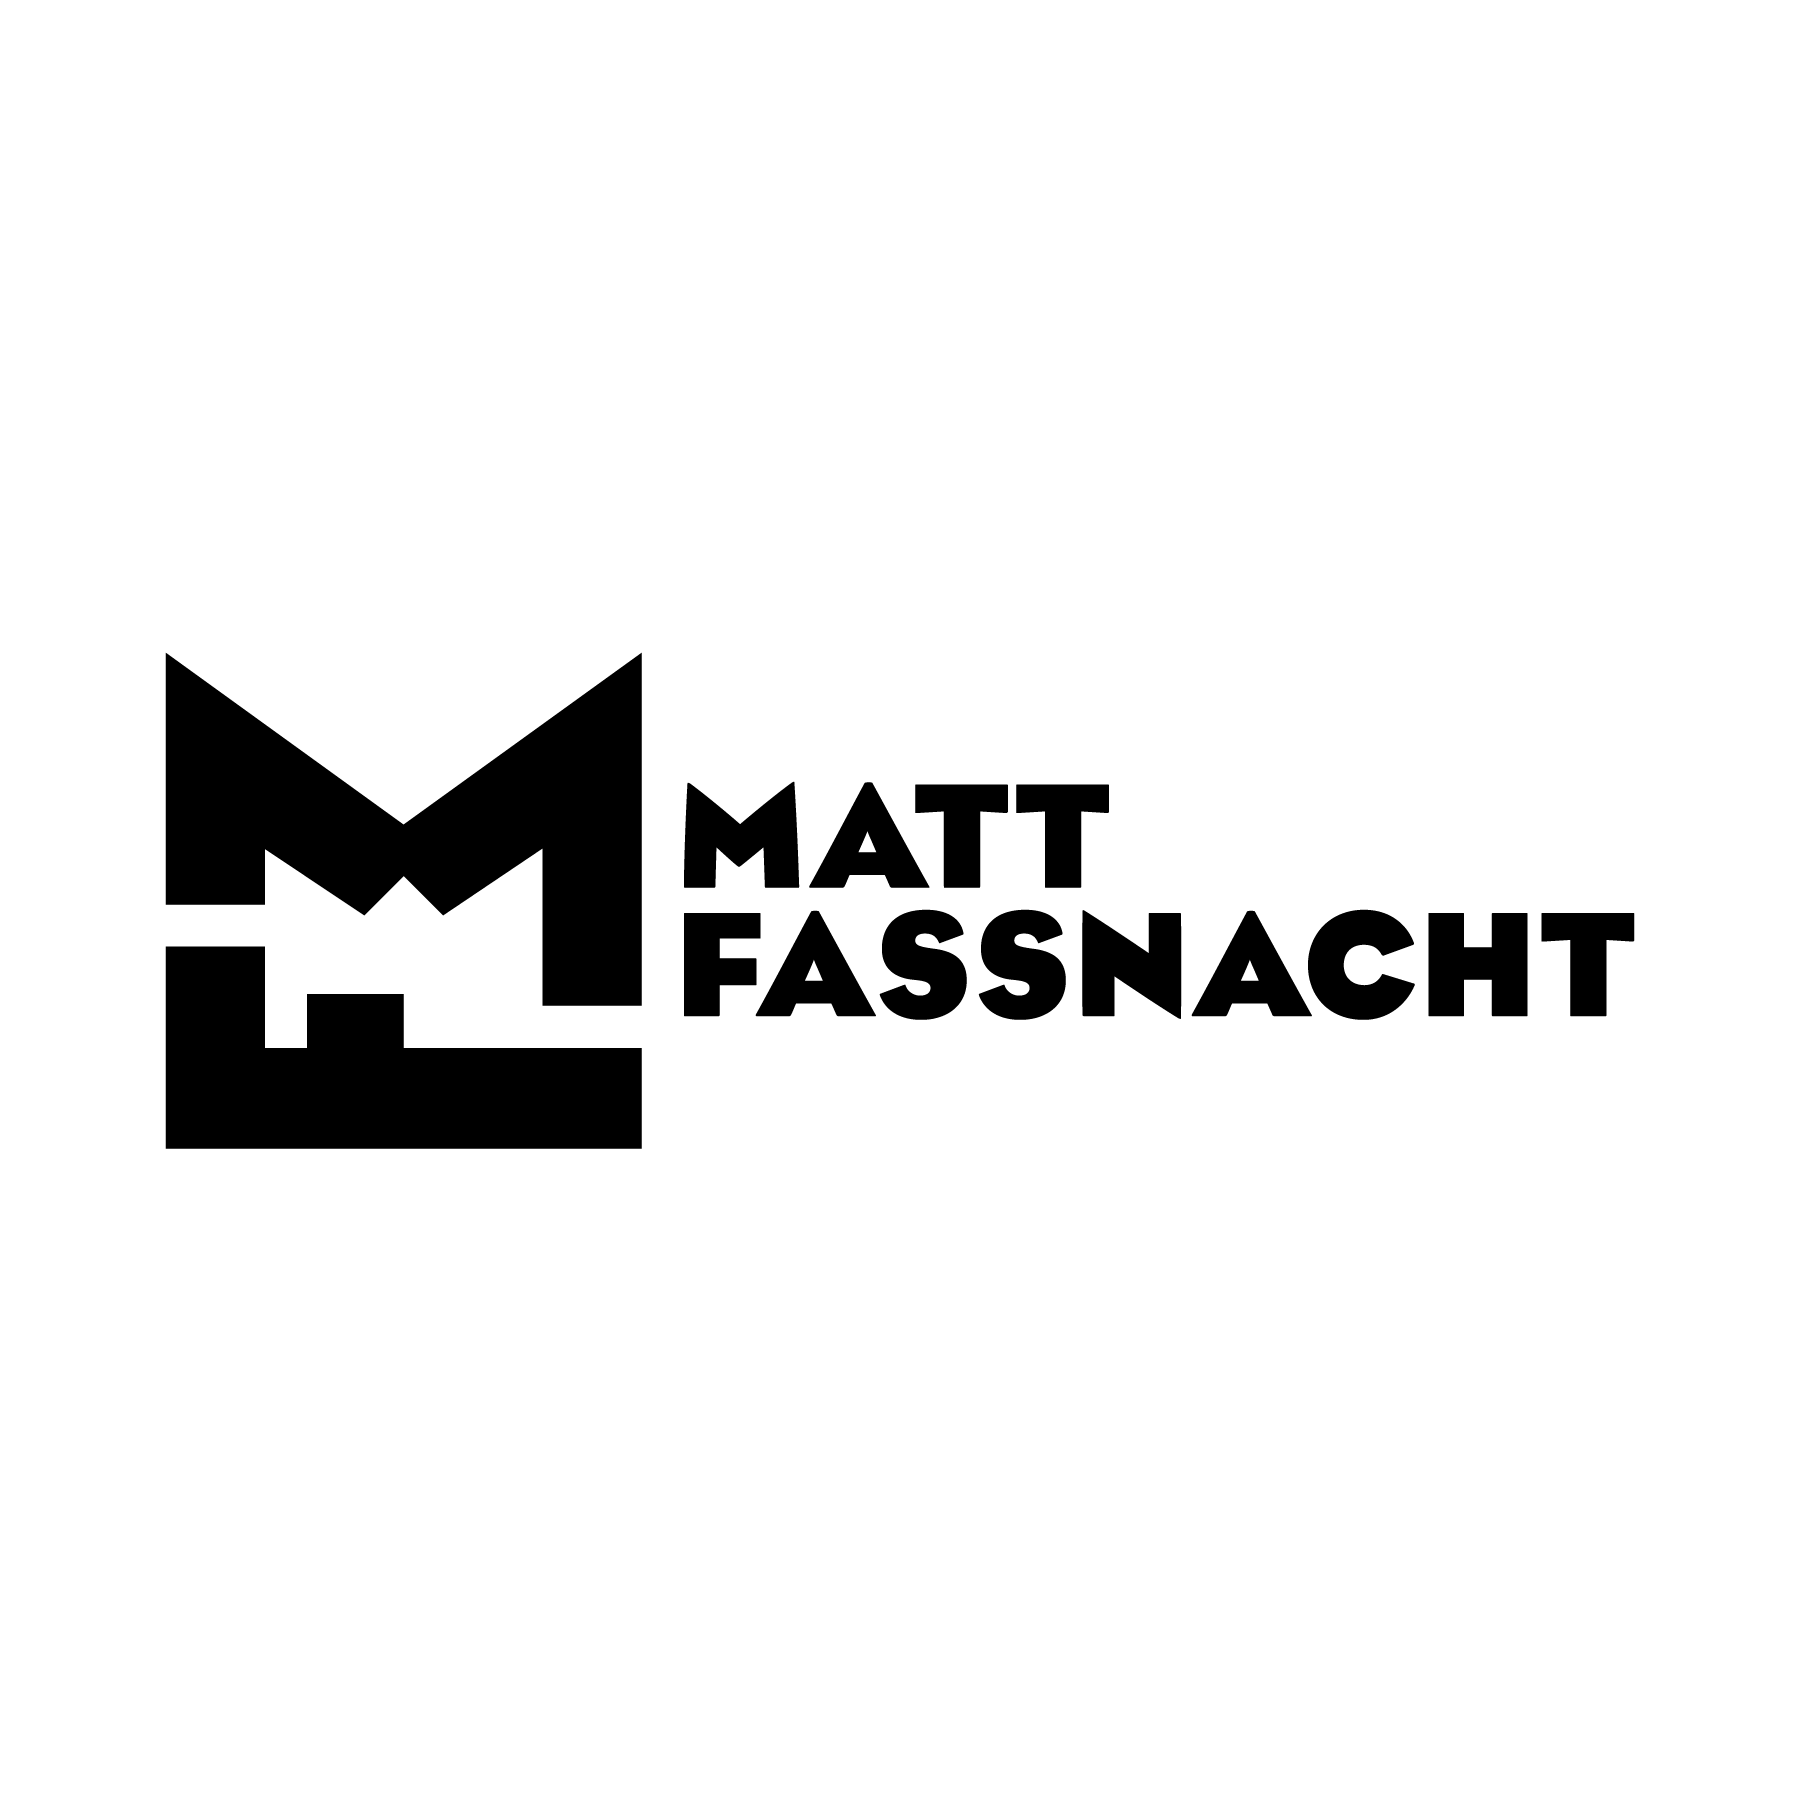 Matthew Fassnacht